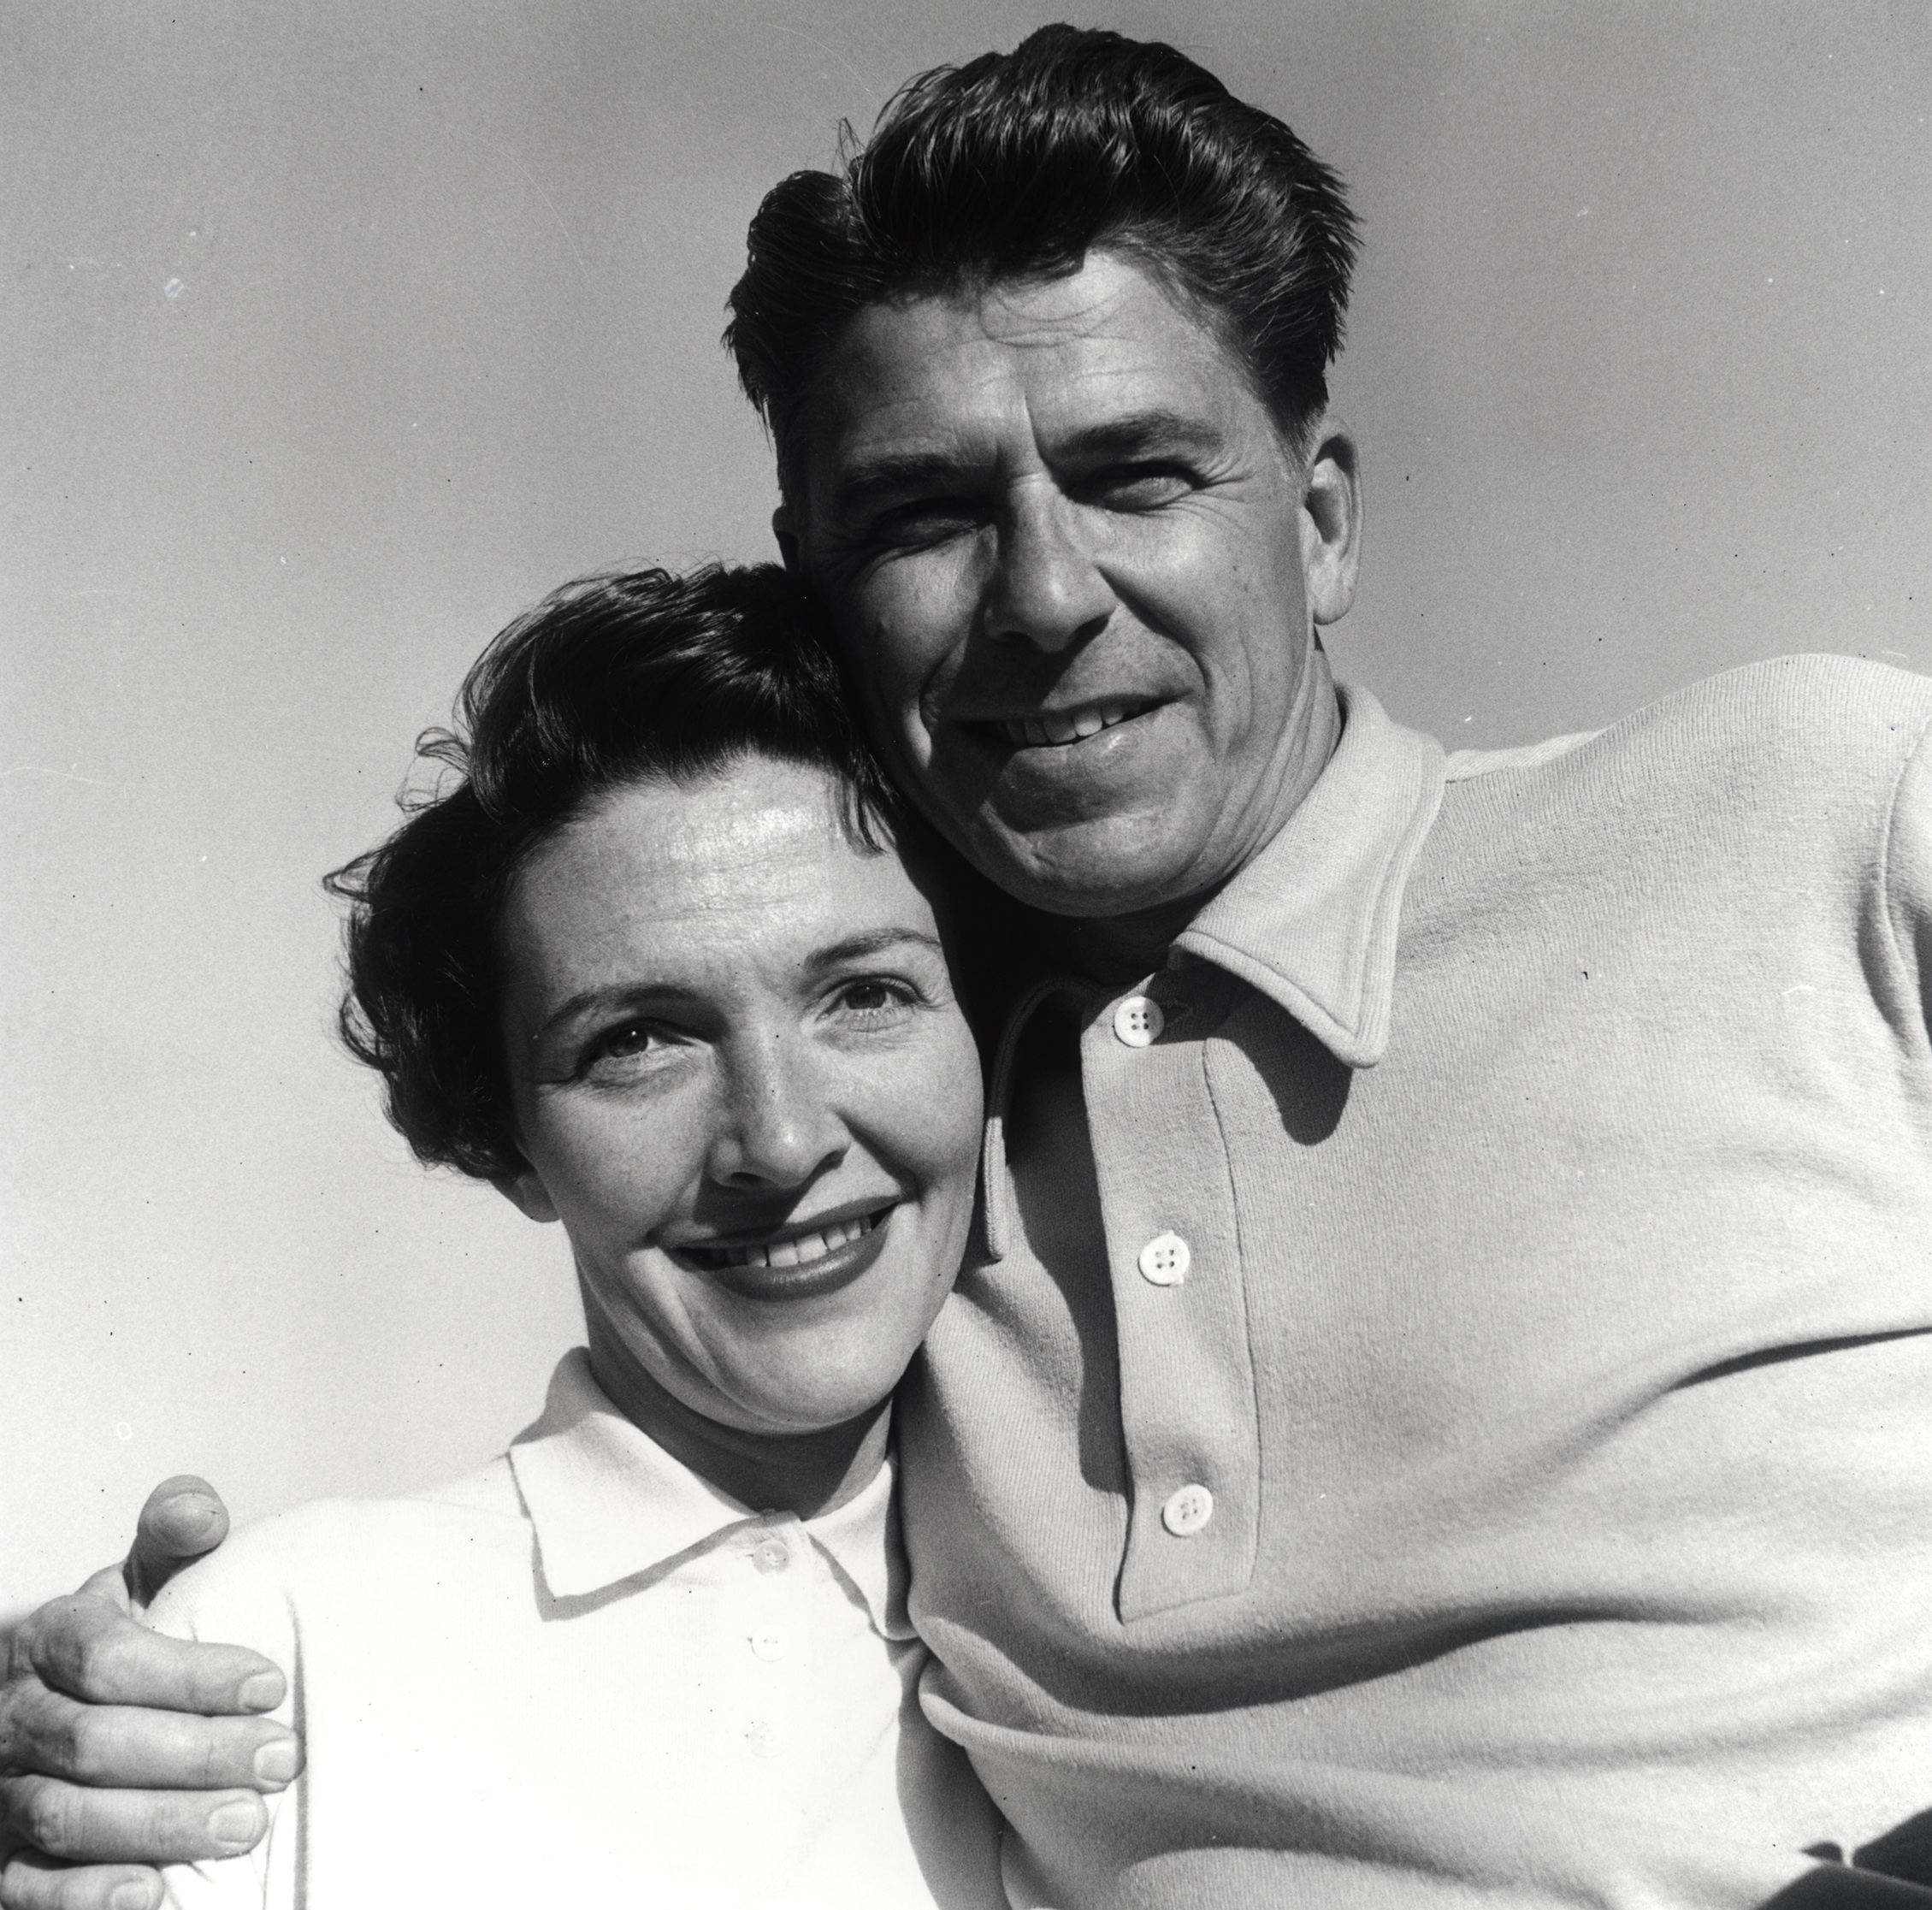 Ronald Reagan and Nancy Reagan at their Malibu Canyon Ranch